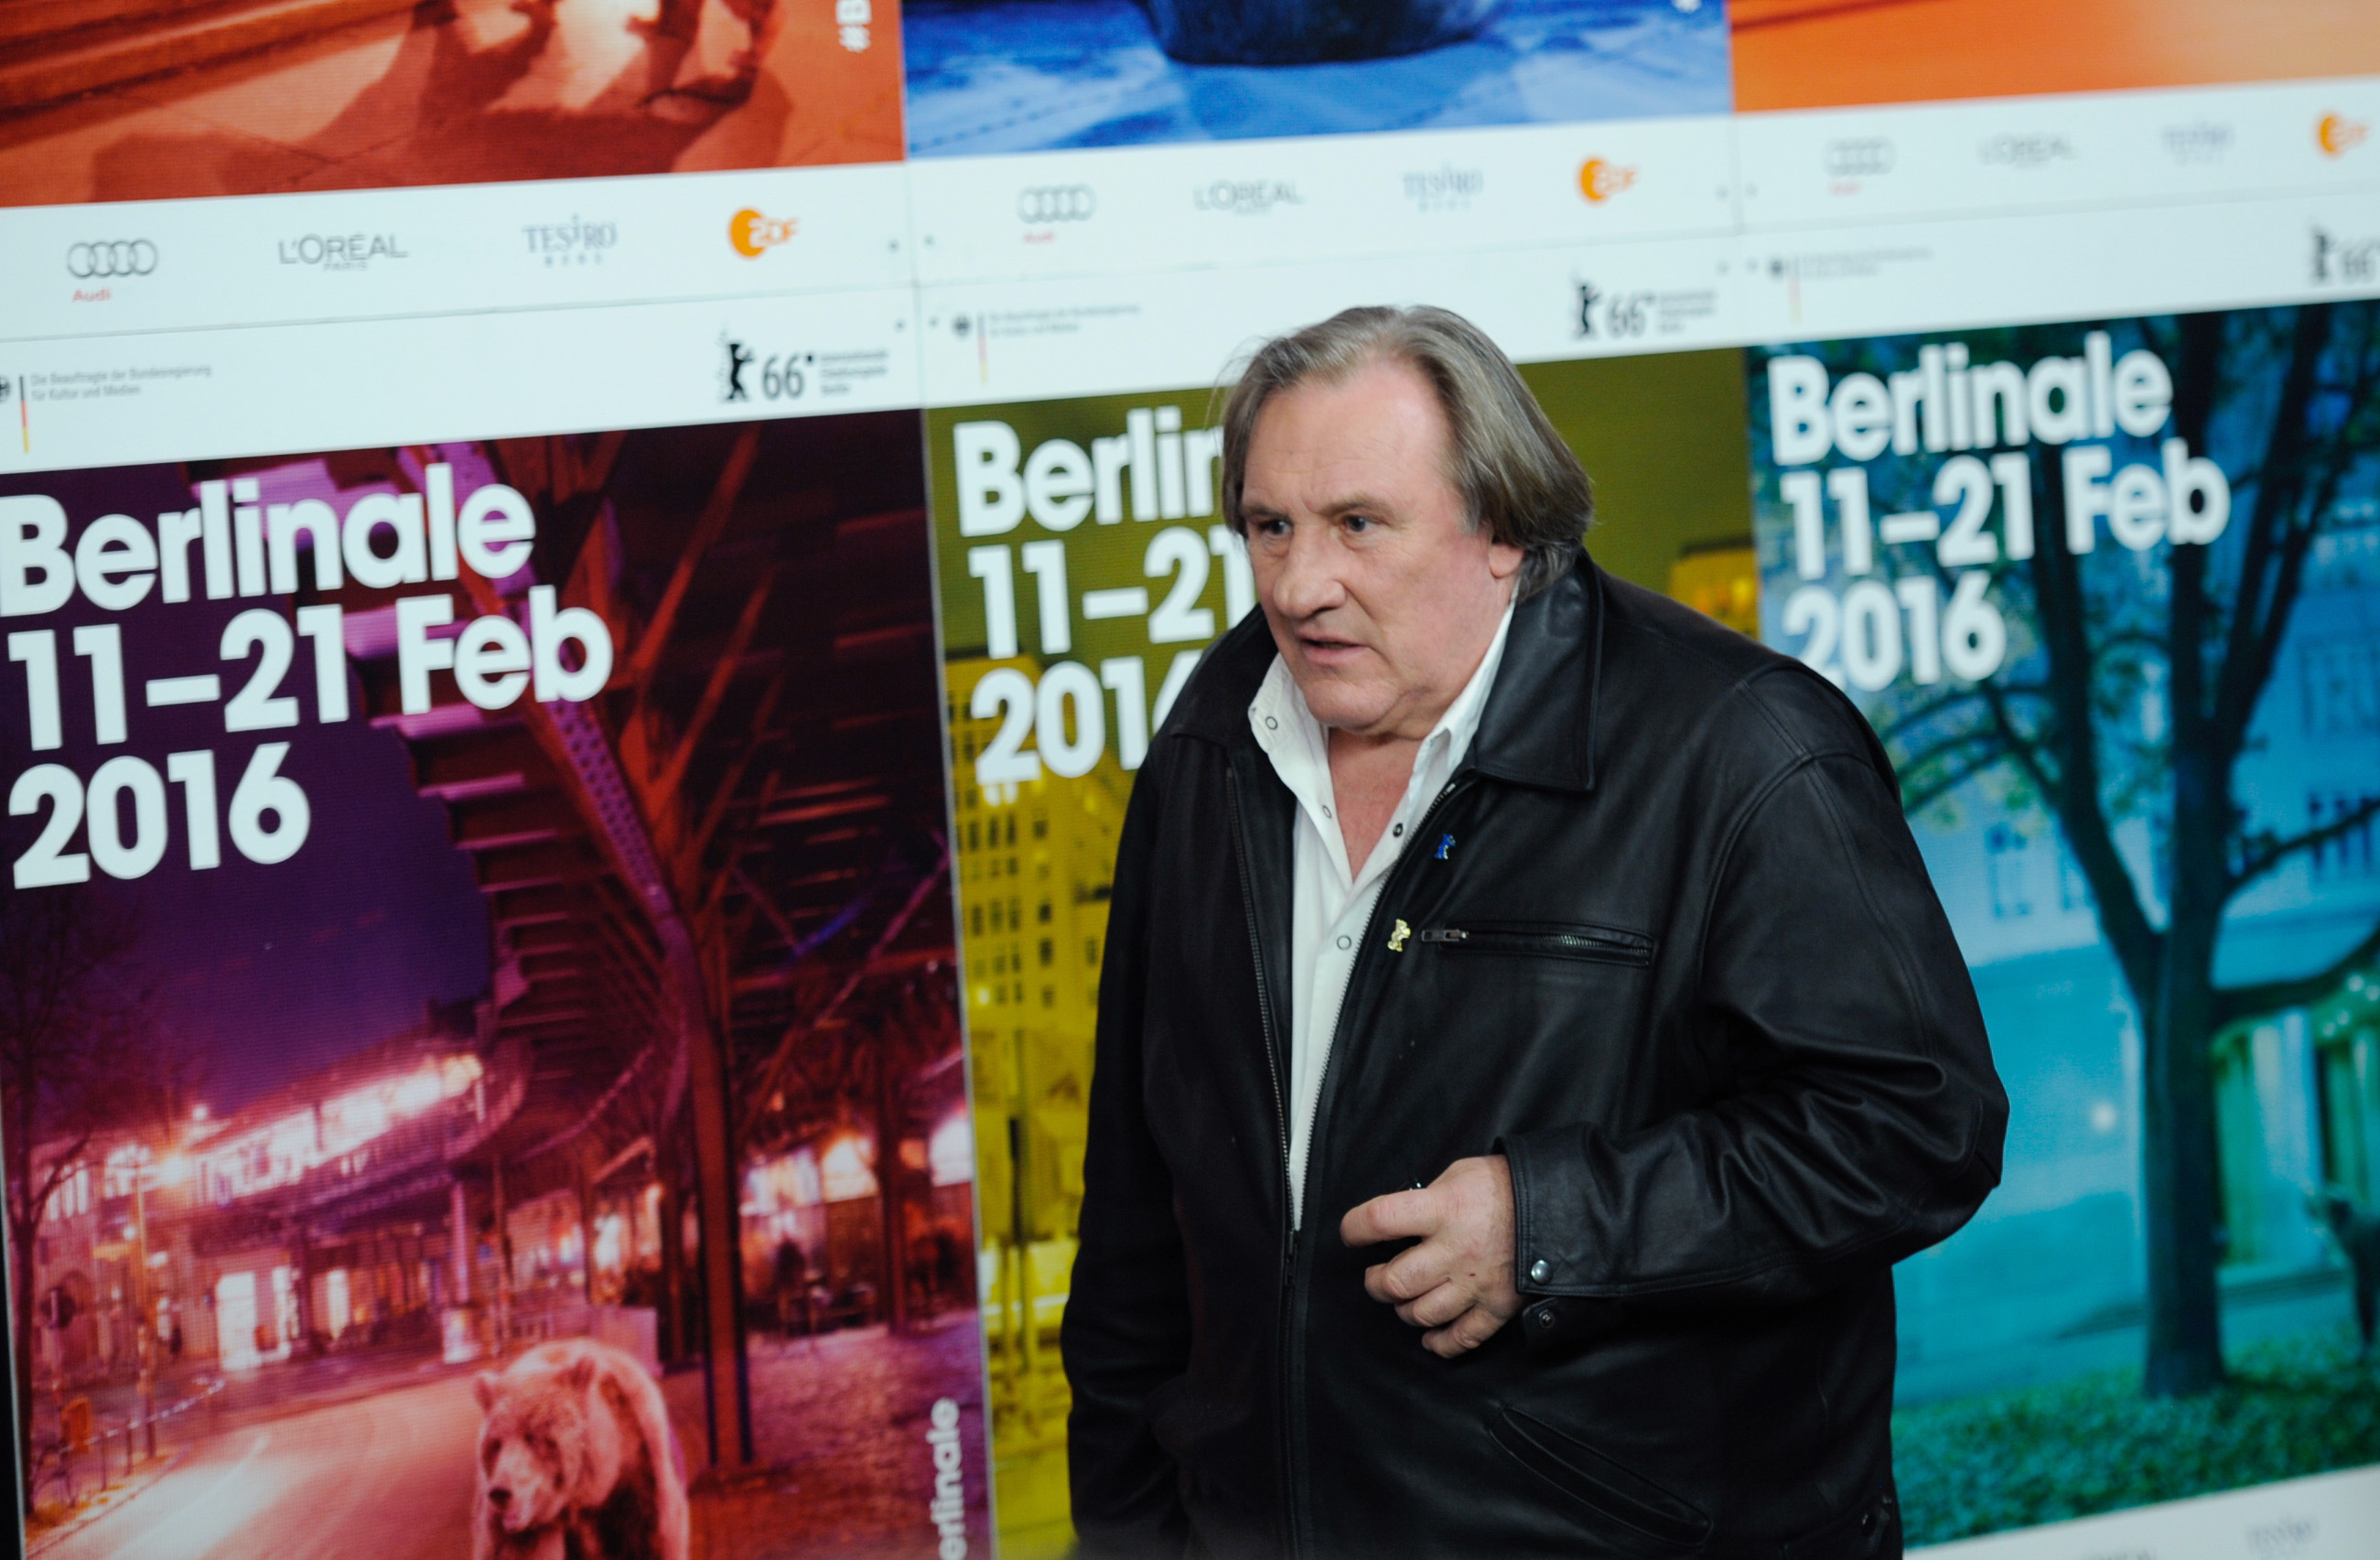 O ator Depardieu chega para entrevista coletiva no 66º Festival Internacional de Cinema de Berlinale, em Berlim